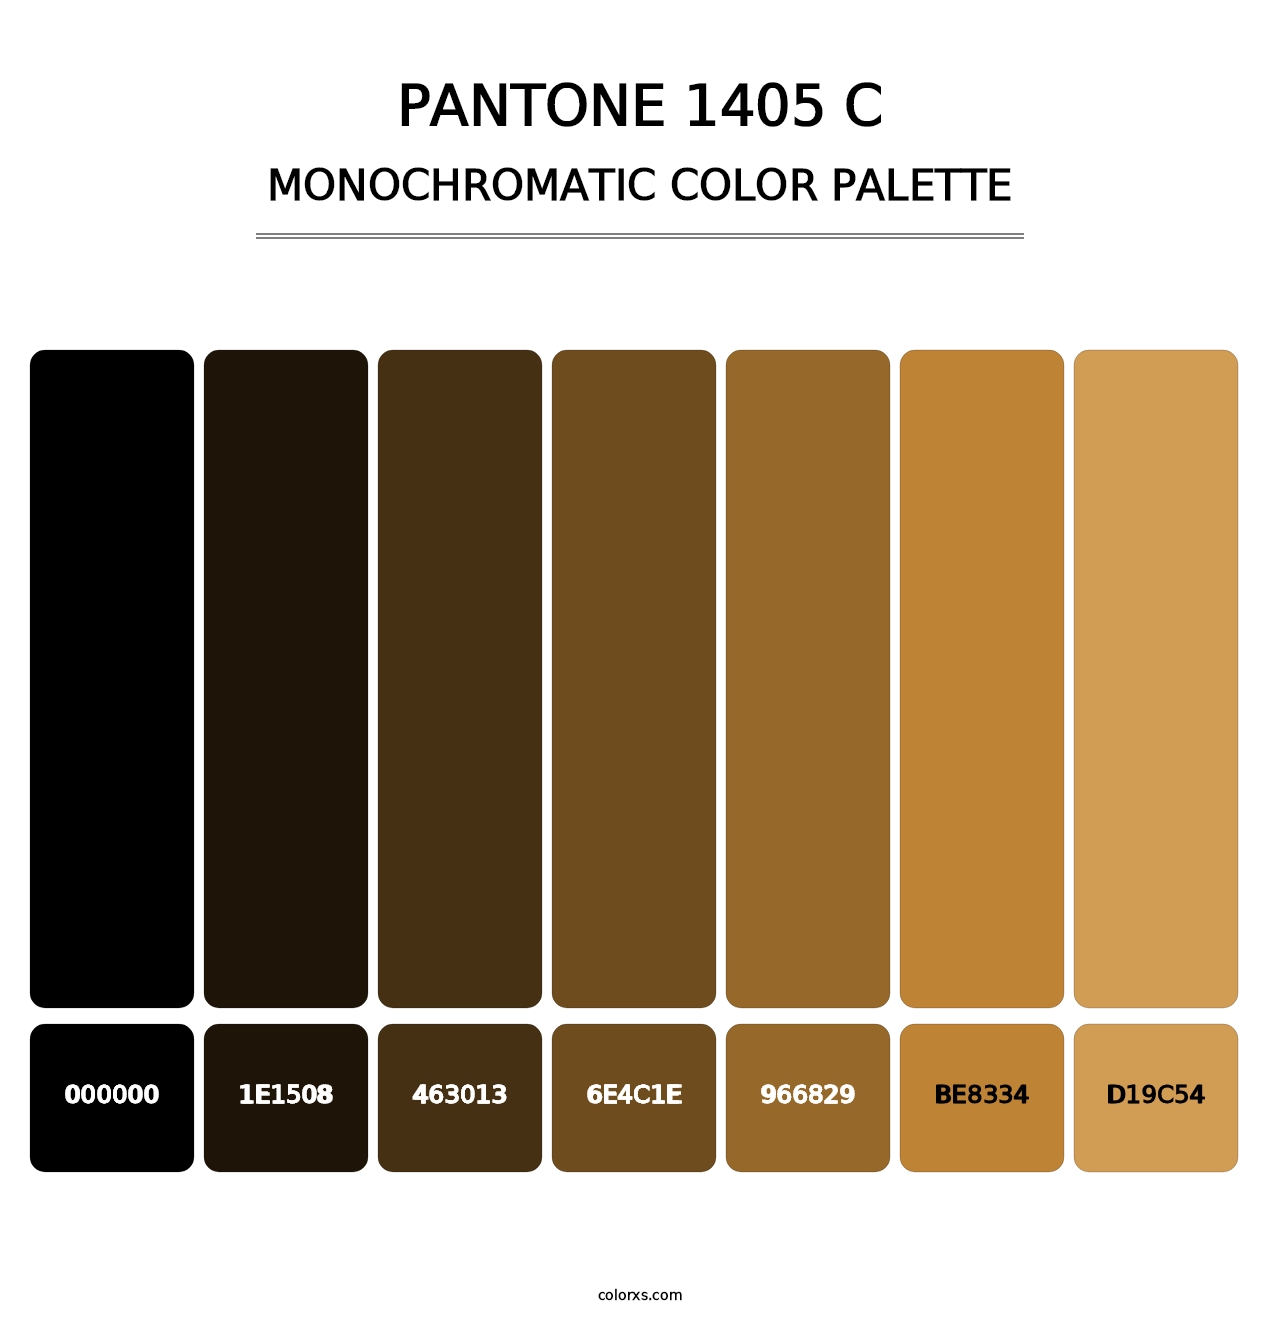 PANTONE 1405 C - Monochromatic Color Palette